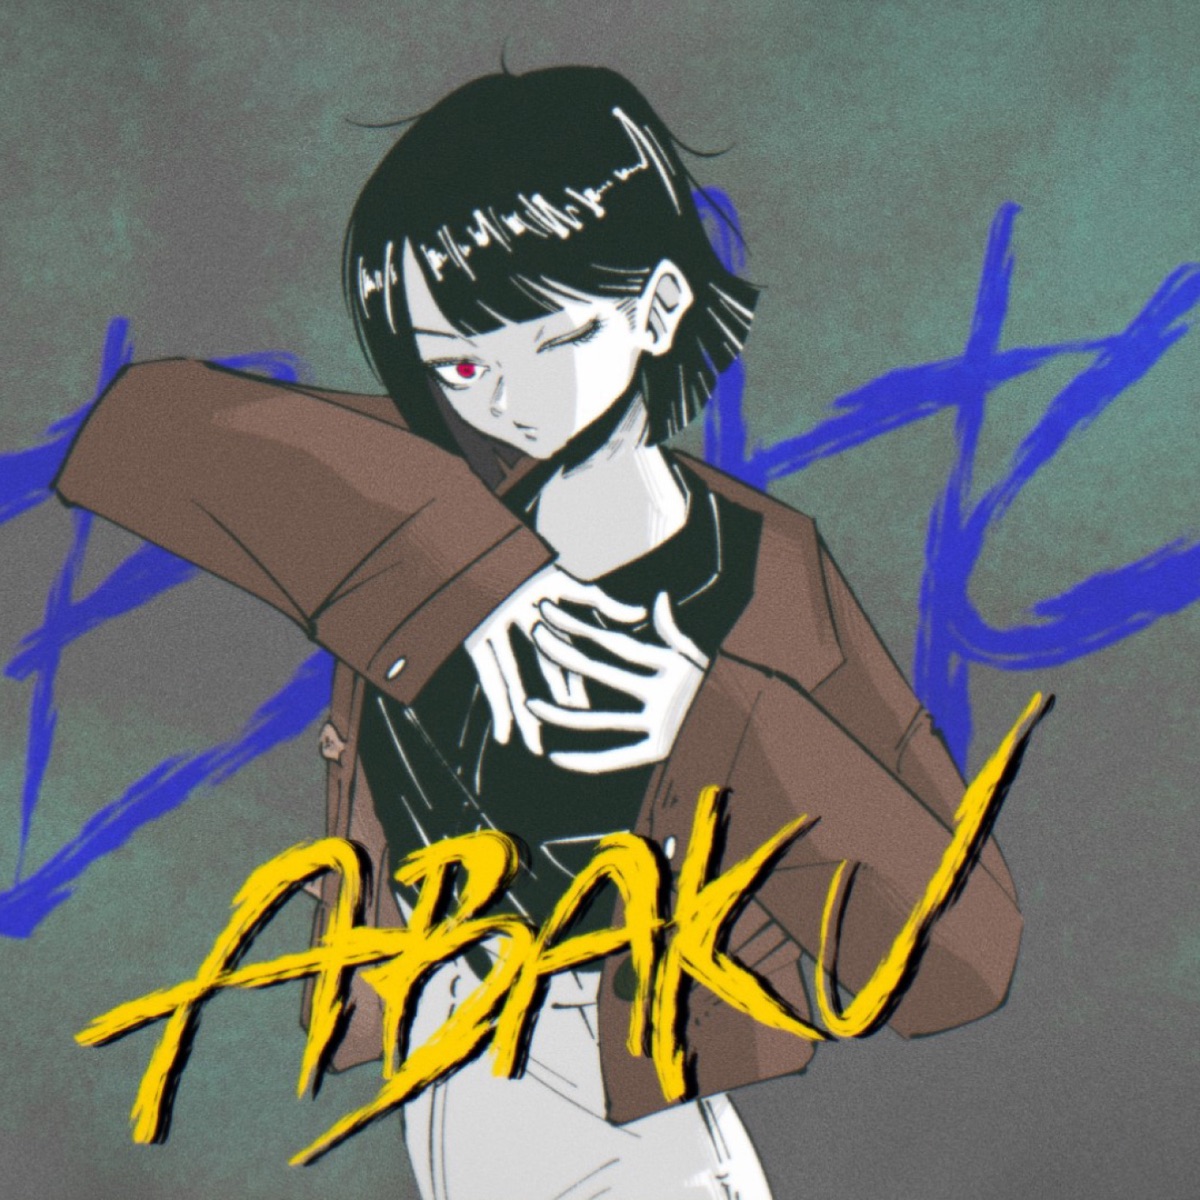 『菅原圭 - ABAKU』収録の『ABAKU』ジャケット